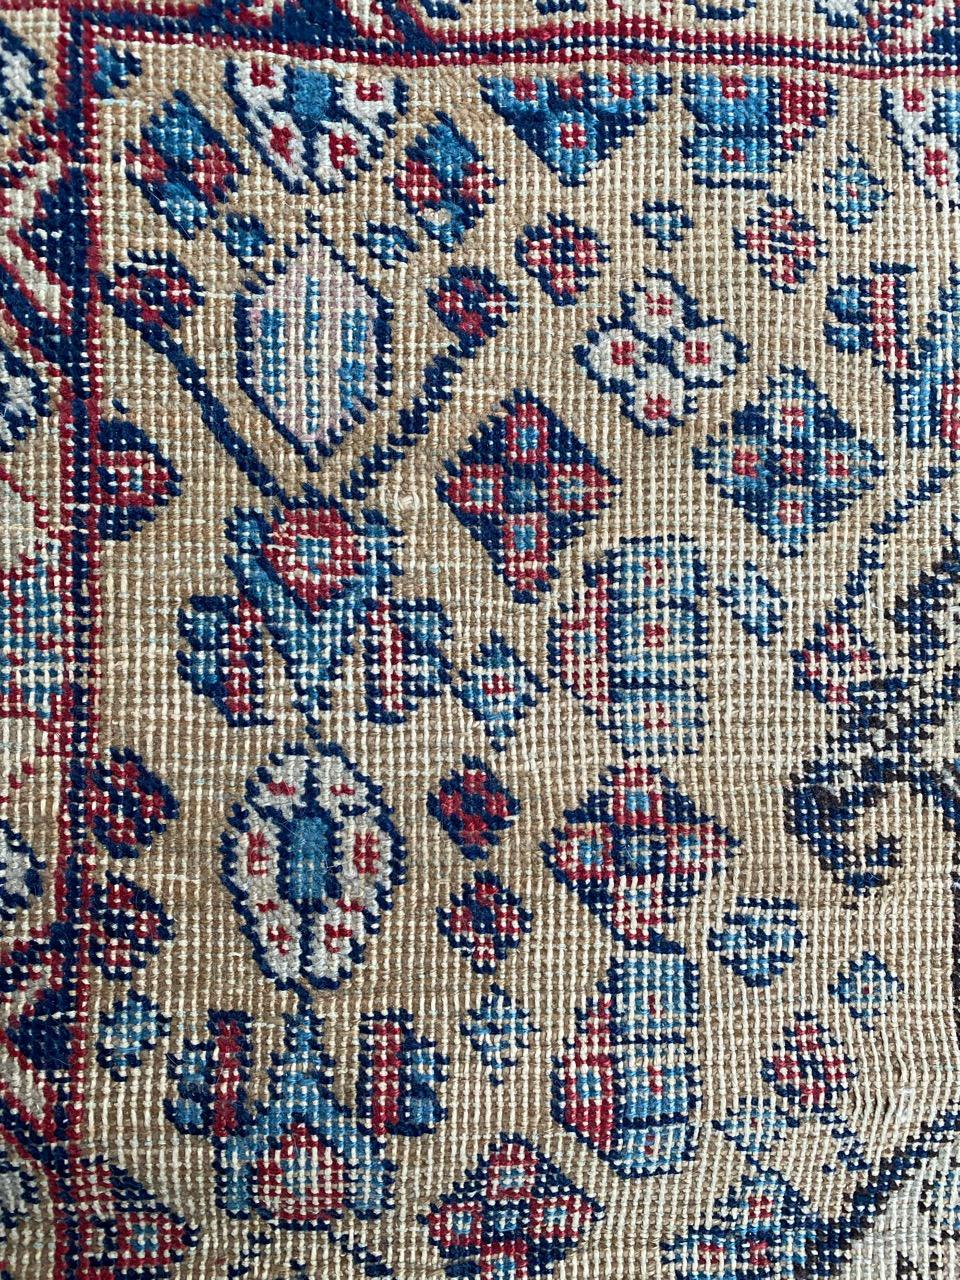 Hand-Knotted Bobyrug’s Nice Little Antique Tabriz Rug For Sale